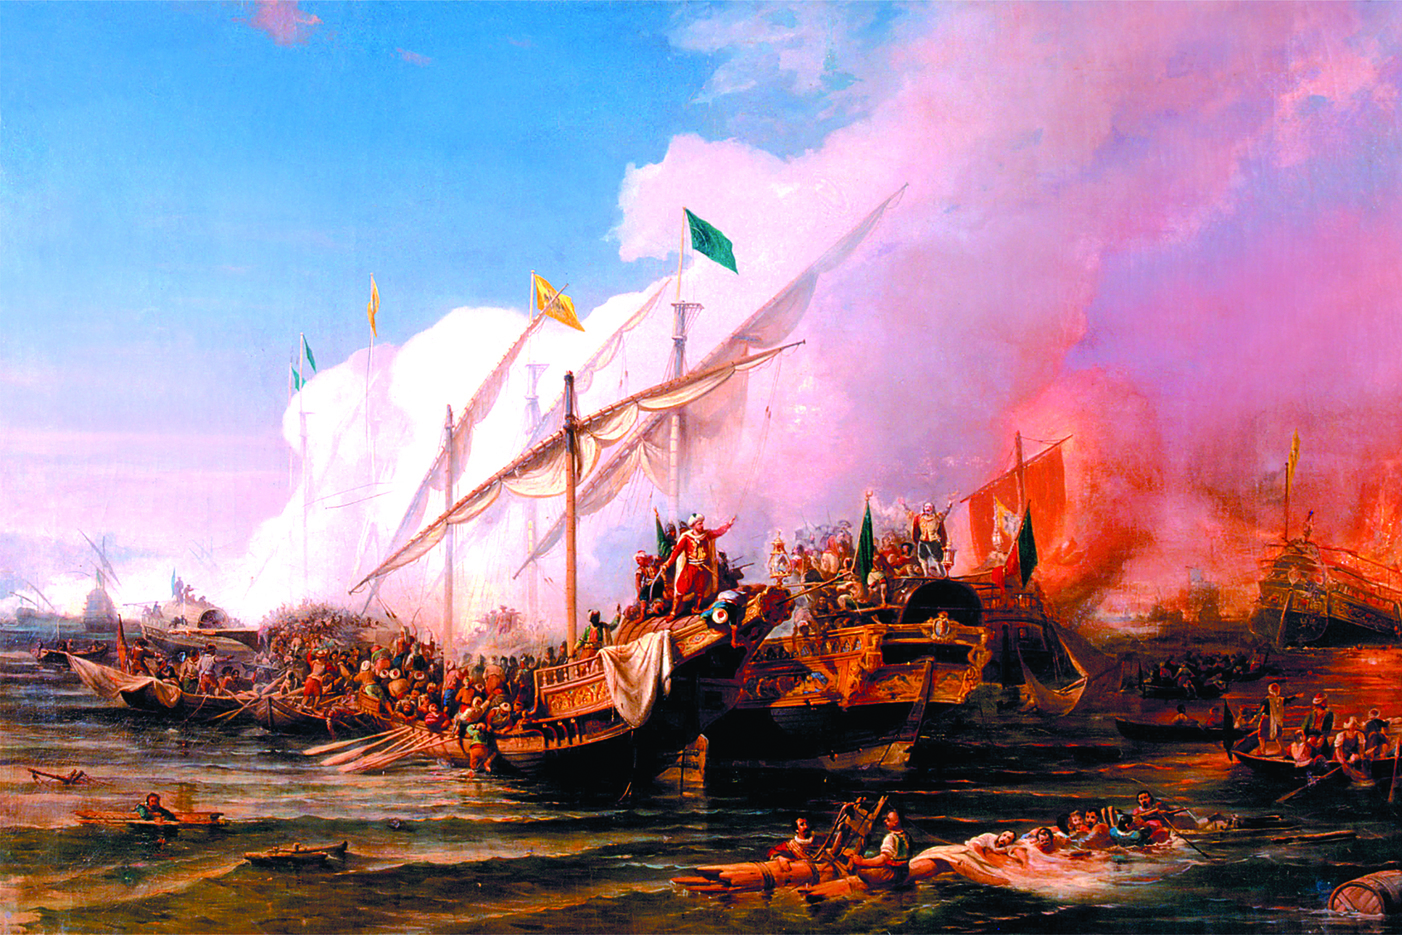 28 сентября 1538 г.
У залива Превезе на северо-западе Греции произошло морское сражение между силами флота Османской империи и коалиции флотов христианских государств